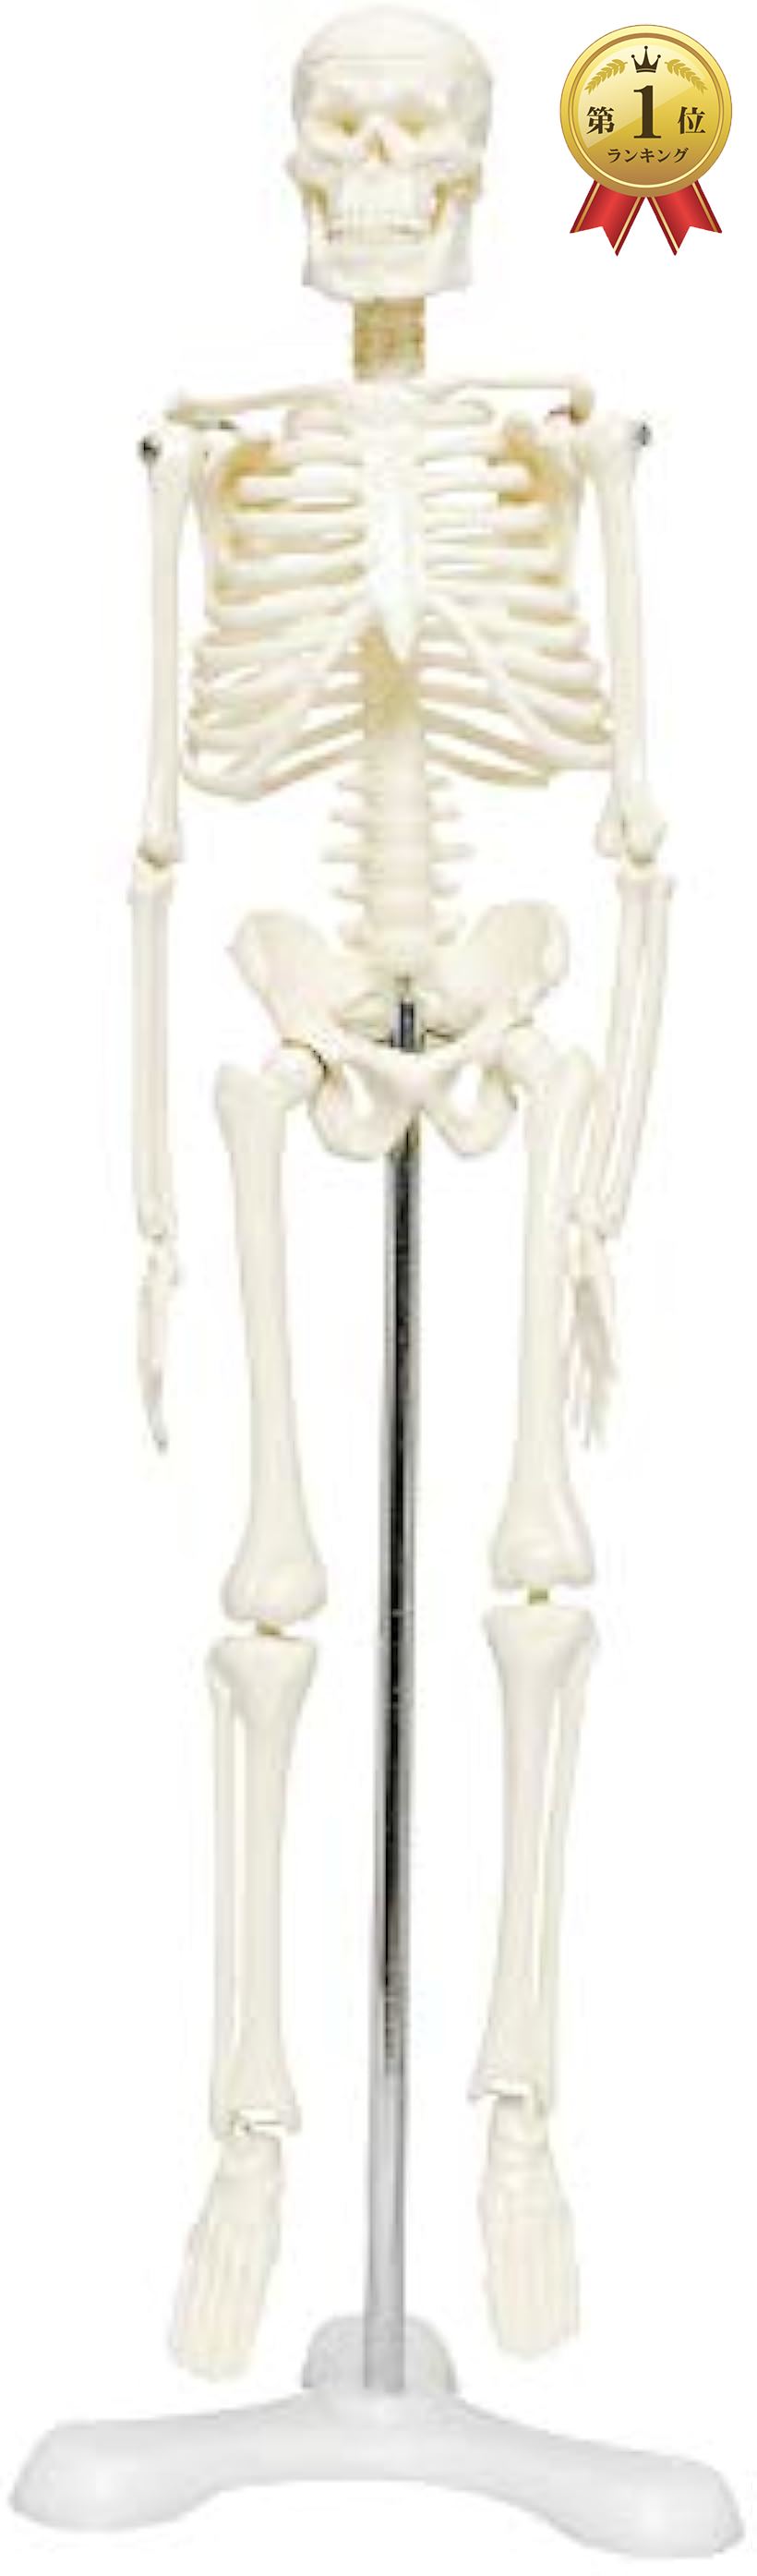 魅力的な価格 セール MONOLIFE 人体骨格模型 骨格標本 稼動 直立 スタンド 教材 45cm 1 4 モデル ホワイト 台座 三つ足 bodyalphabet.xyz bodyalphabet.xyz